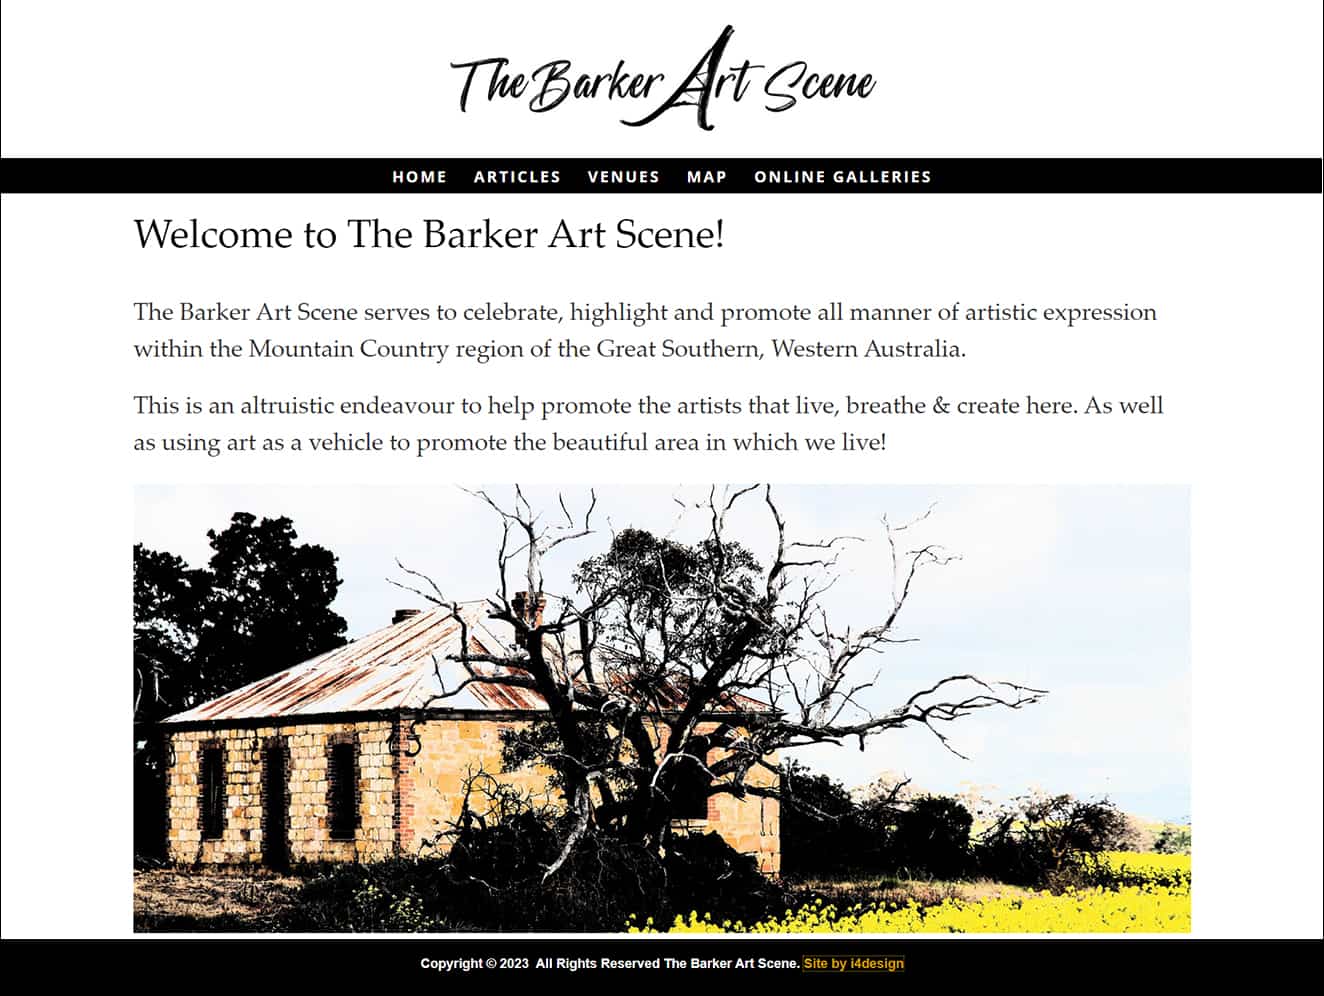 The Barker Art Scene